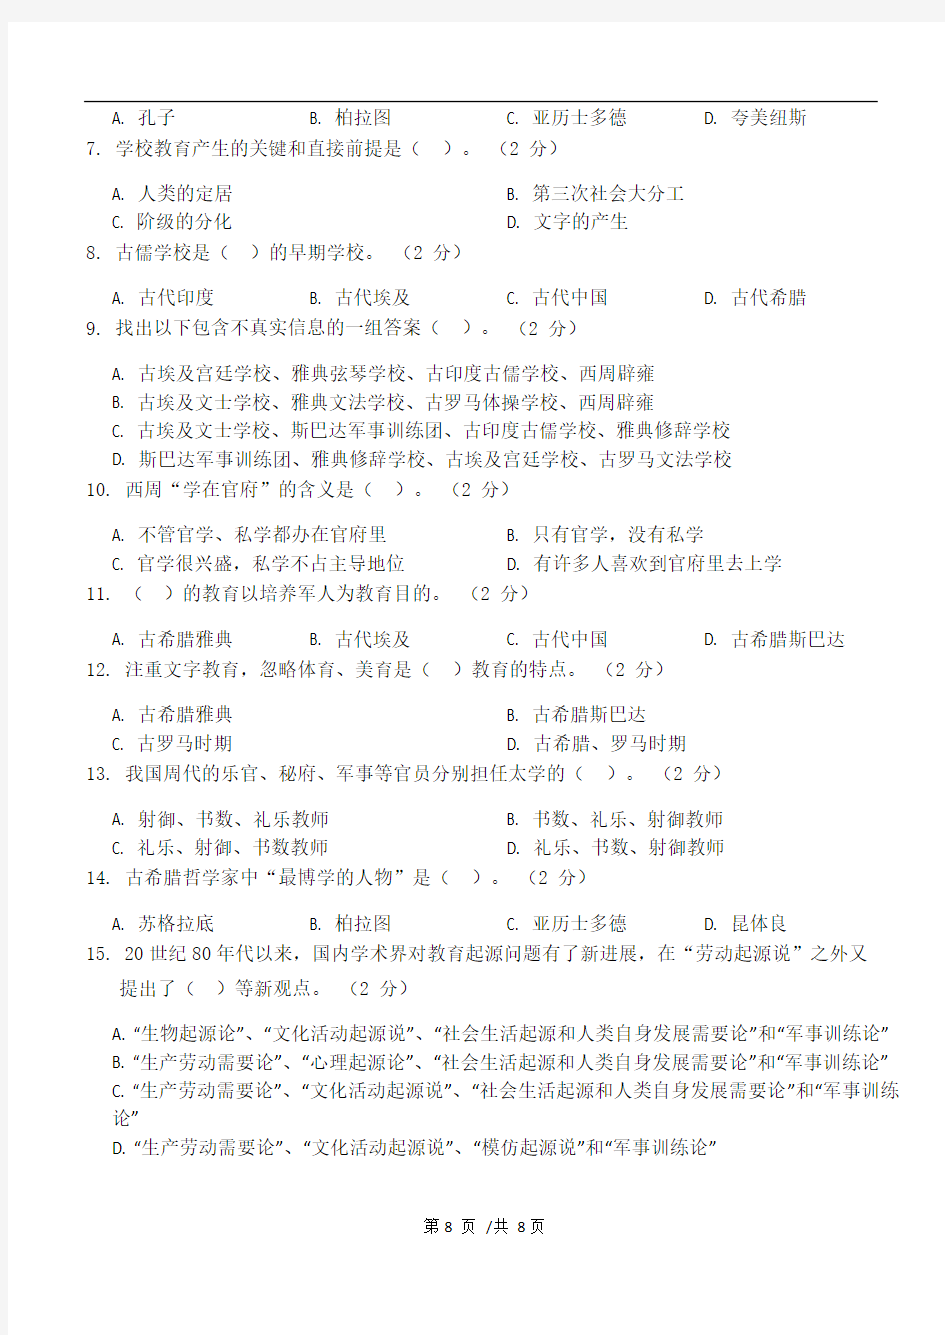 中外教育史第1阶段江南大学练习题答案  共三个阶段,这是其中一个阶段,答案在最后。